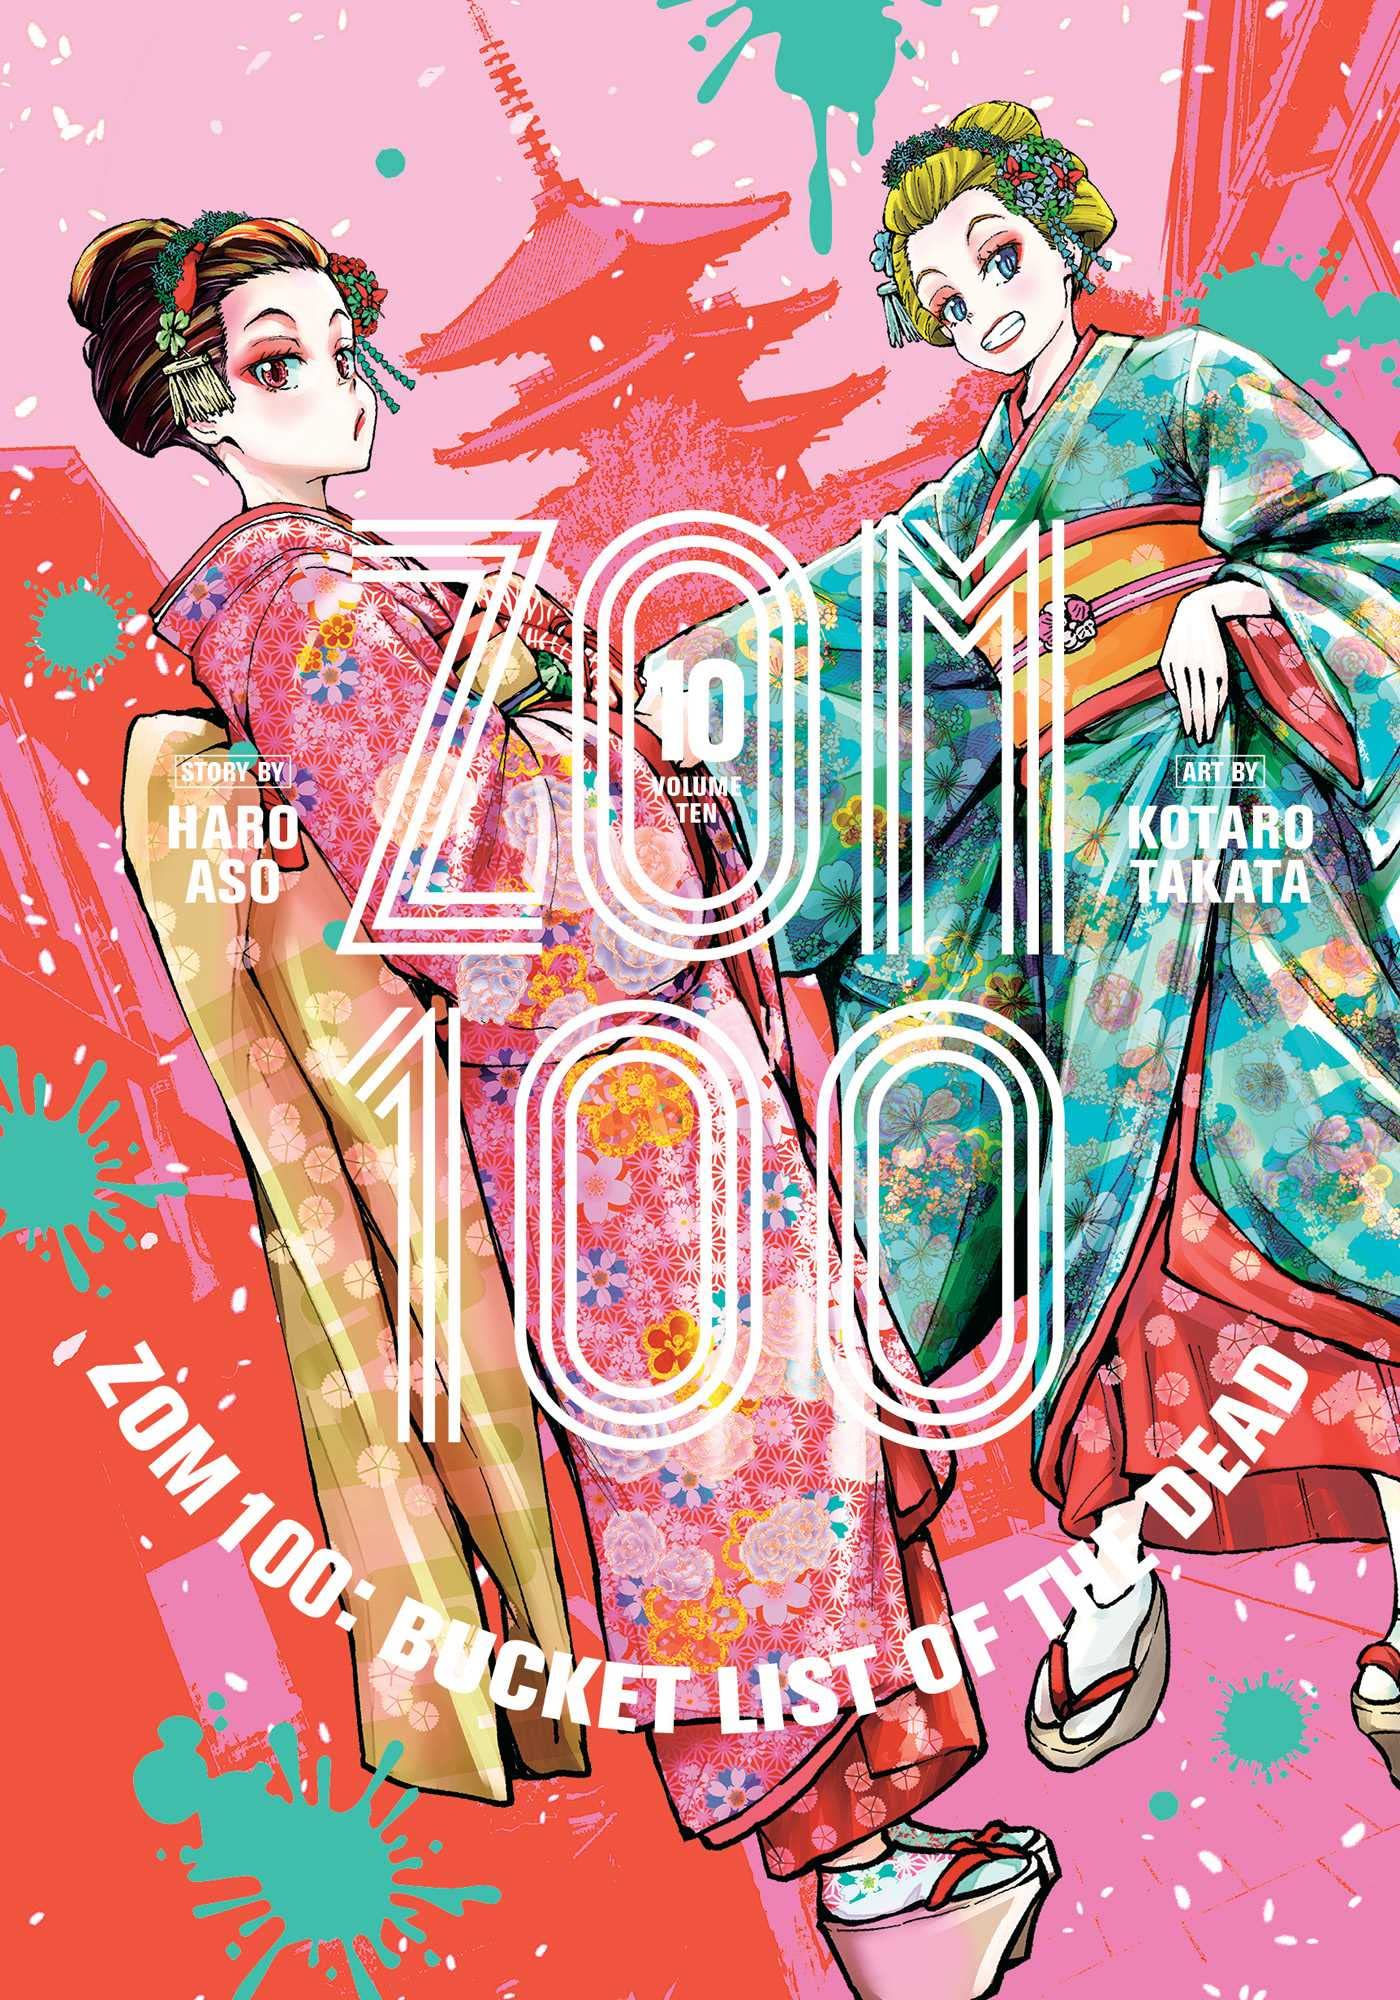 Zom 100 - Volume 10 | Haro Aso